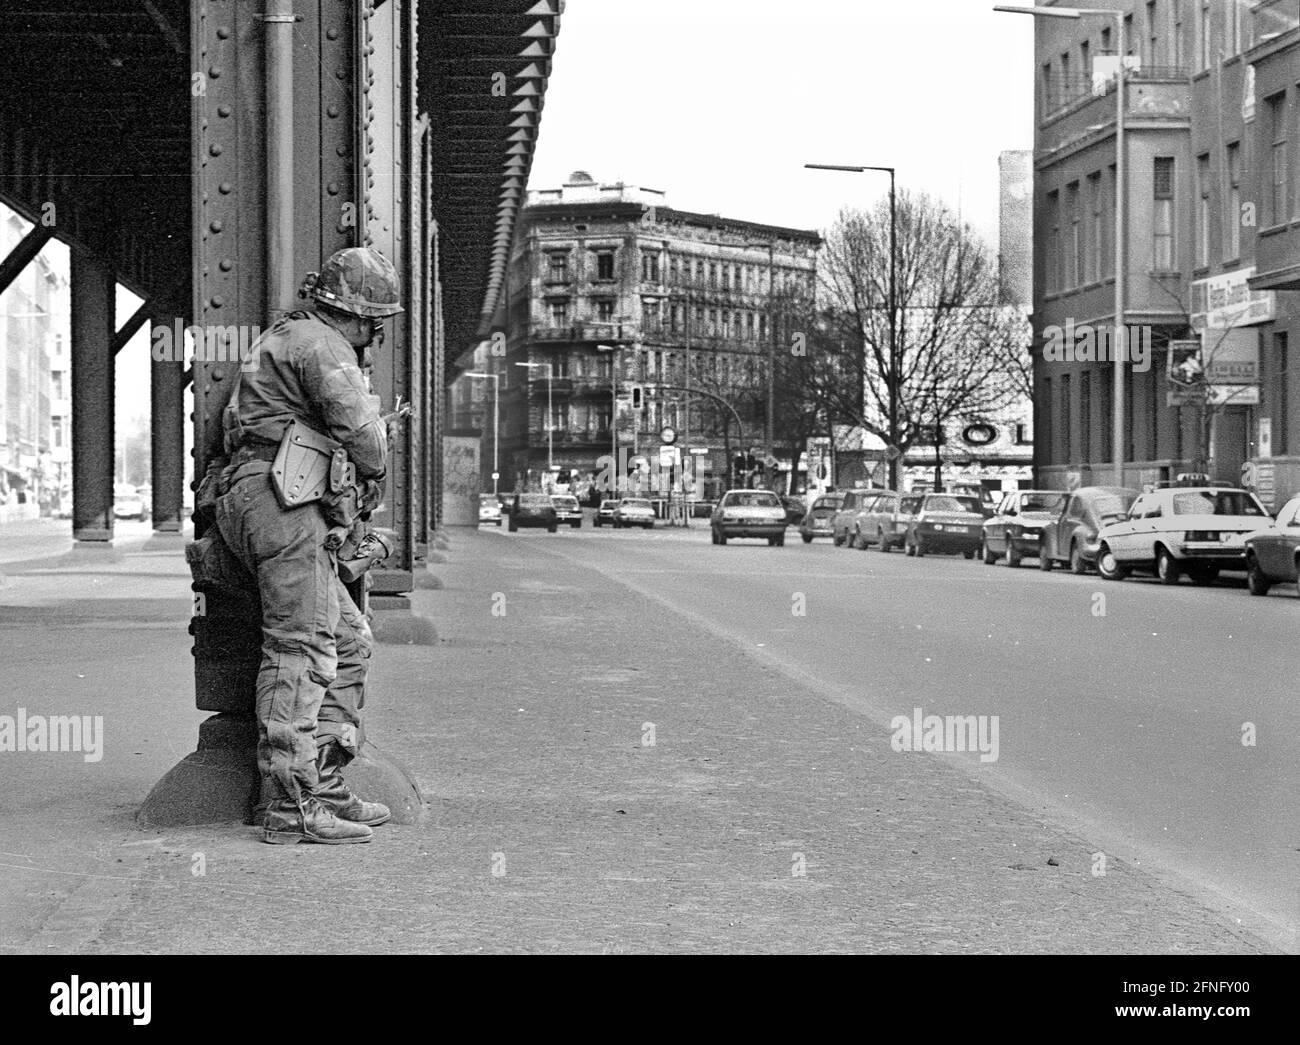 Berlin / Bezirke / Kreuzberg / 20.3.1980 Skalitzer Straße. Amerikanische  Soldaten kämpfen auf den Straßen des Umbaugebiets Kreuzberg. Der ganze  Block steht leer, von Spekulanten von Mietern entleert. Alles soll  abgerissen und